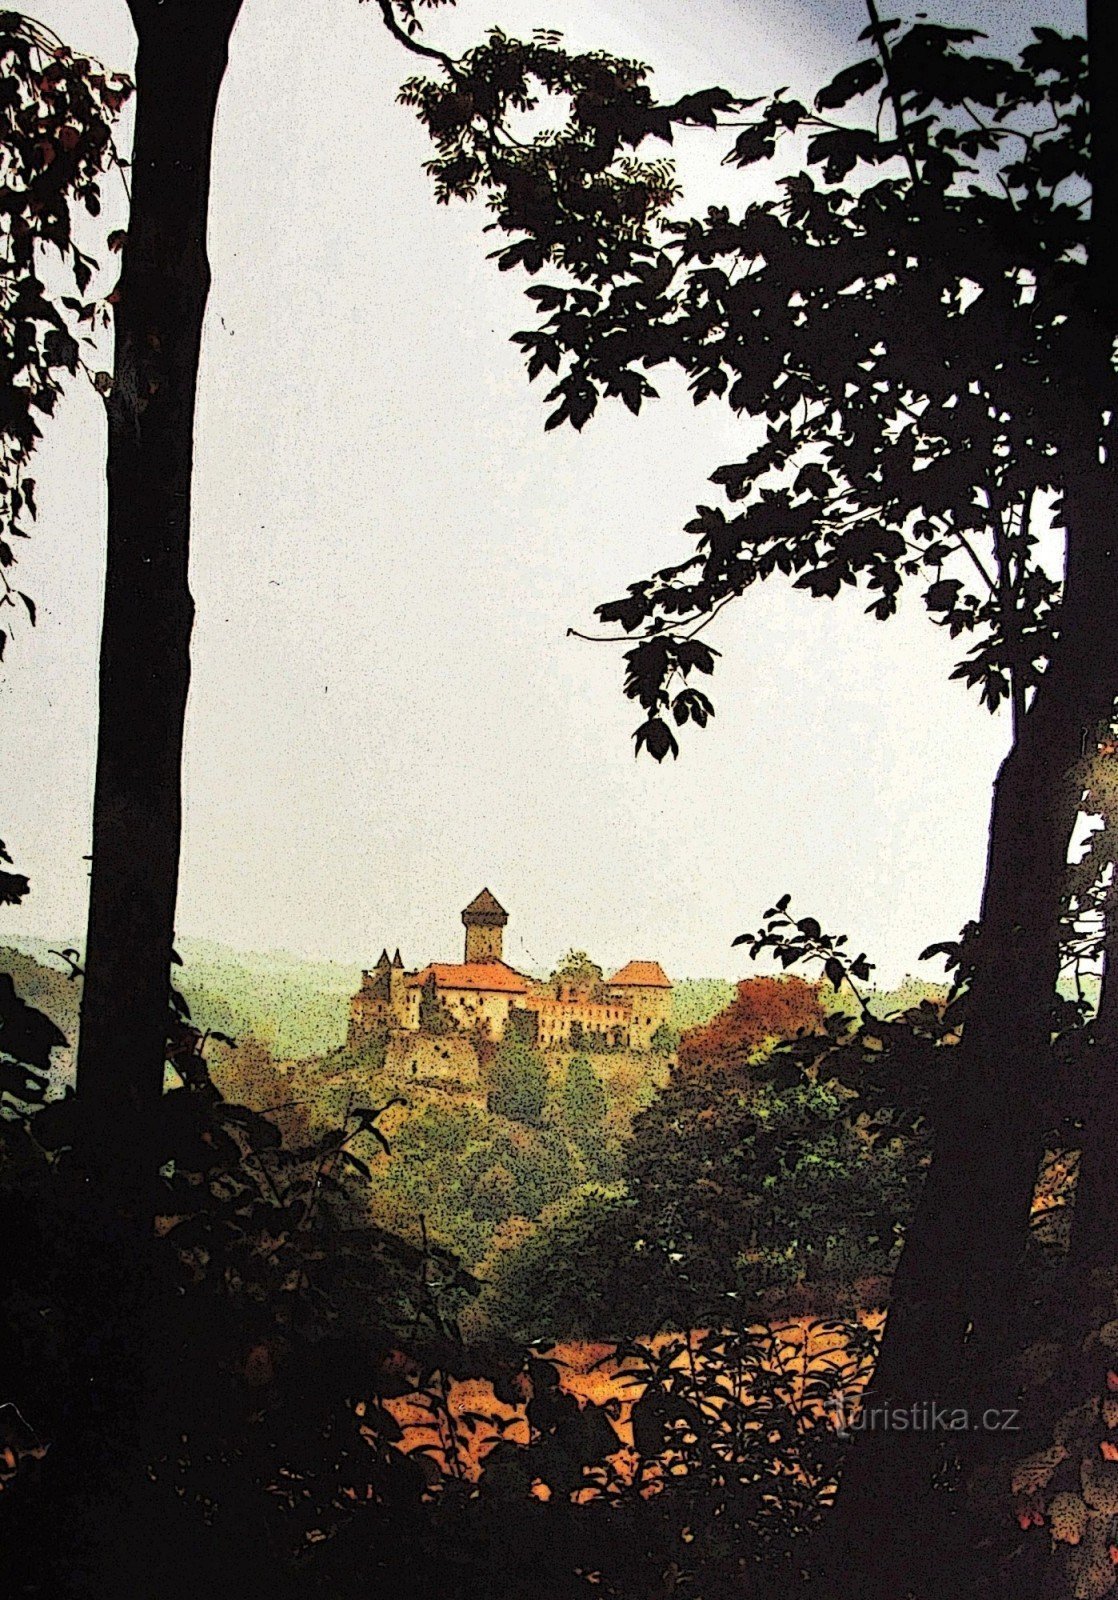 Sovinec slott på avstånd